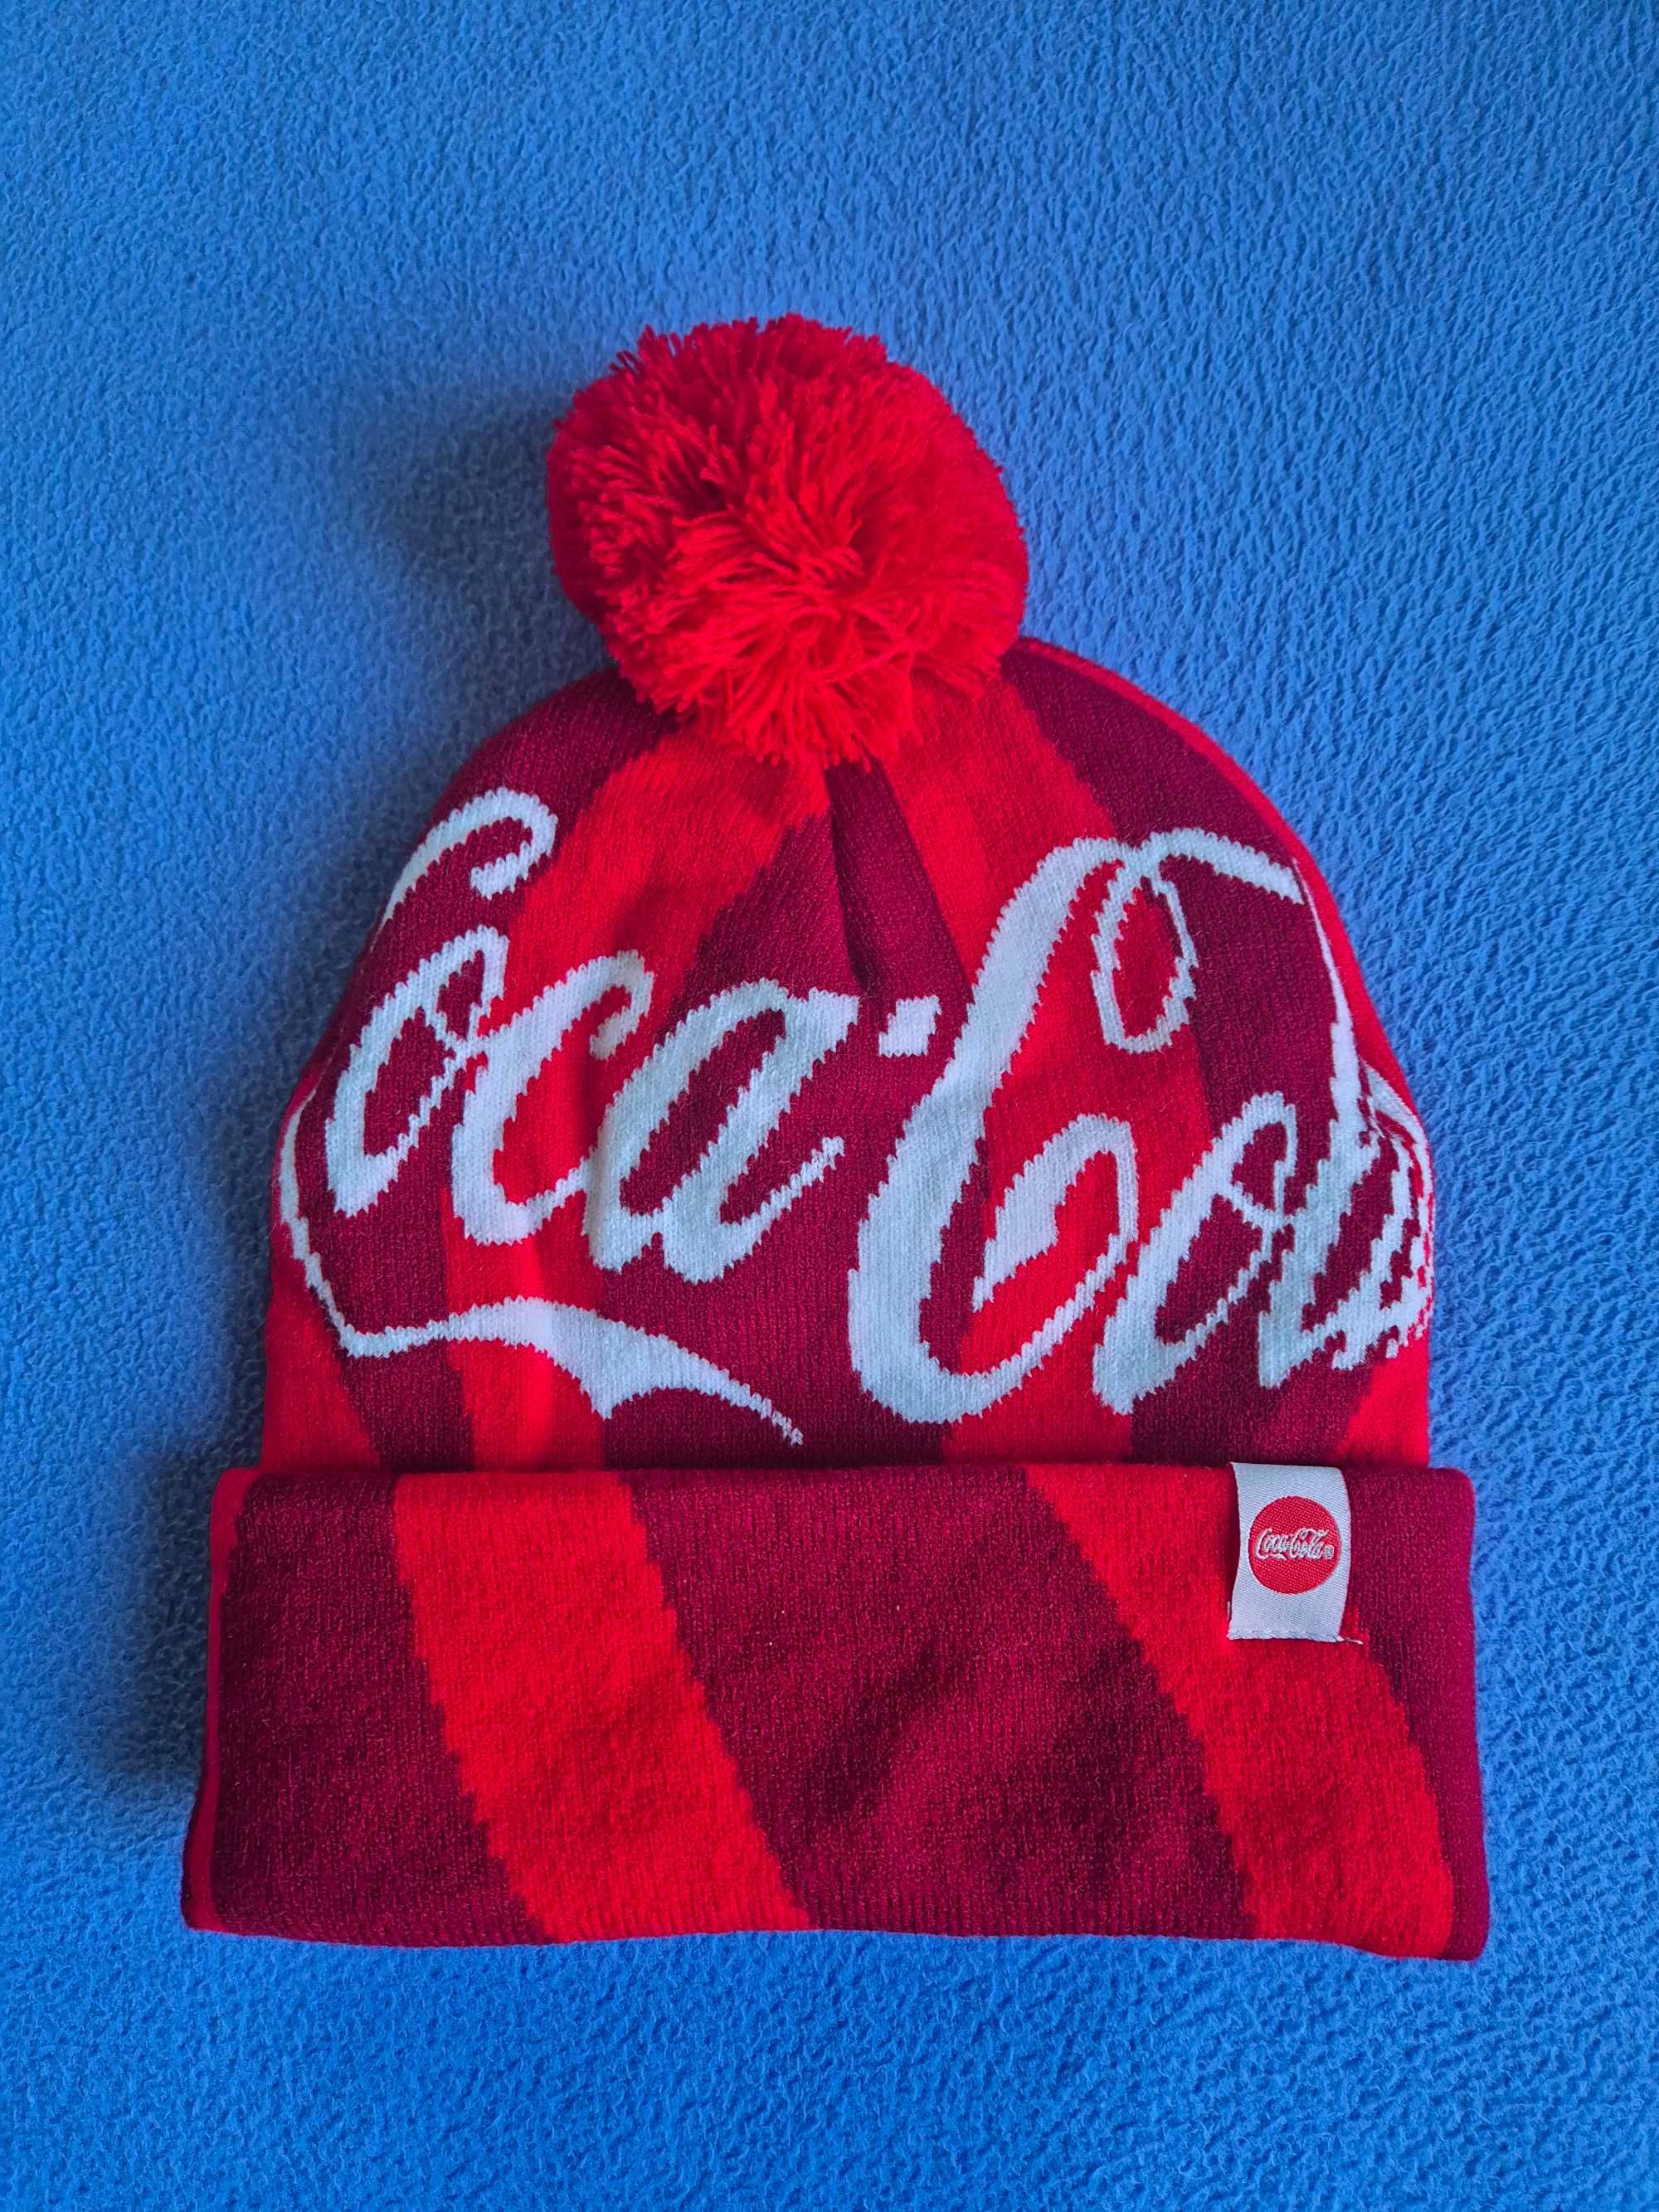 Gorro vermelho - edição especial Coca Cola